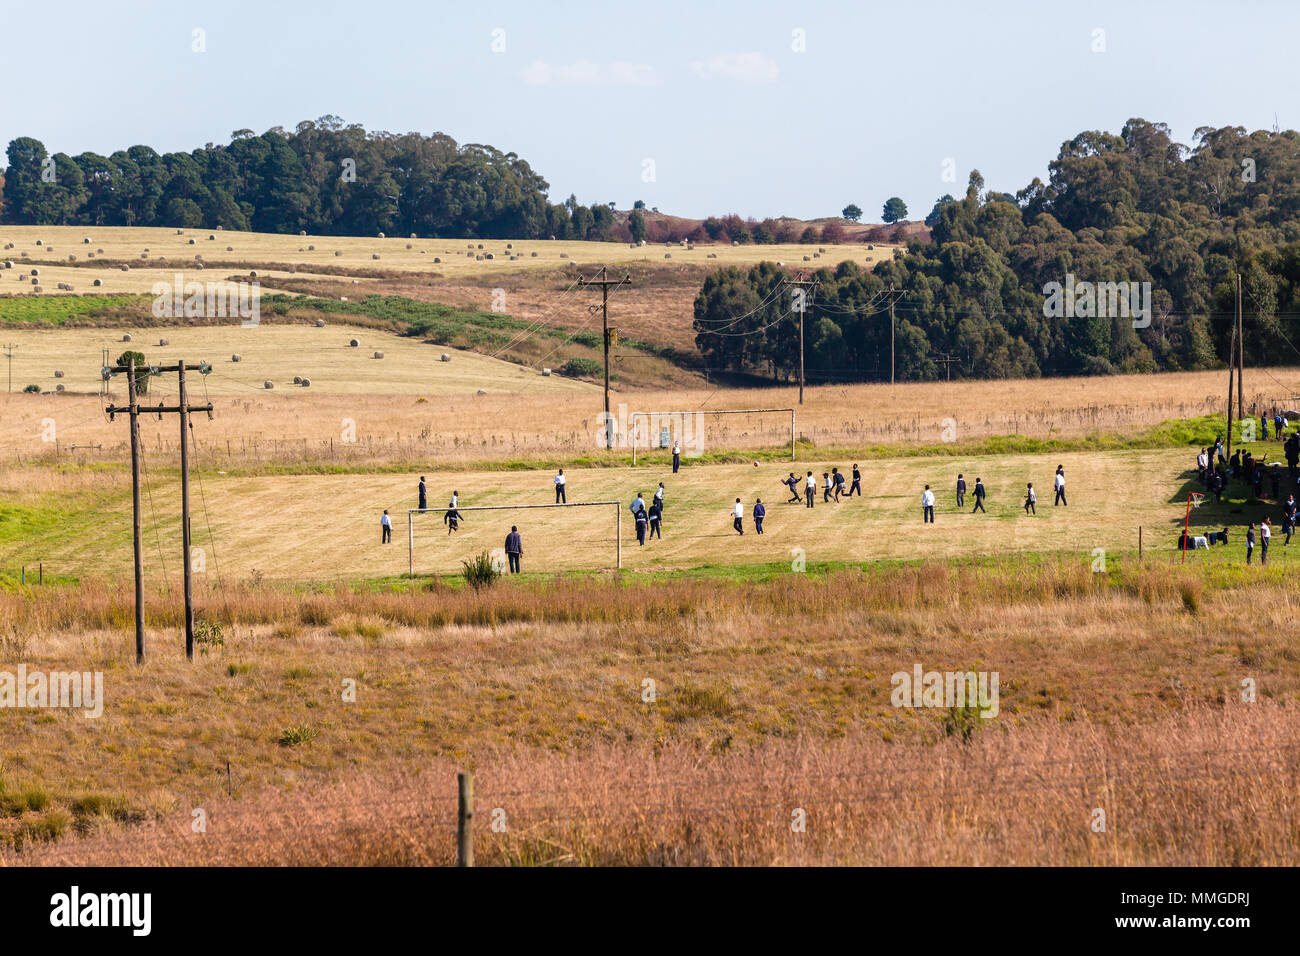 Scuola calcio soccer i bambini giocando pomeriggio di gioco in un allevamento paesaggio panoramico. Foto Stock